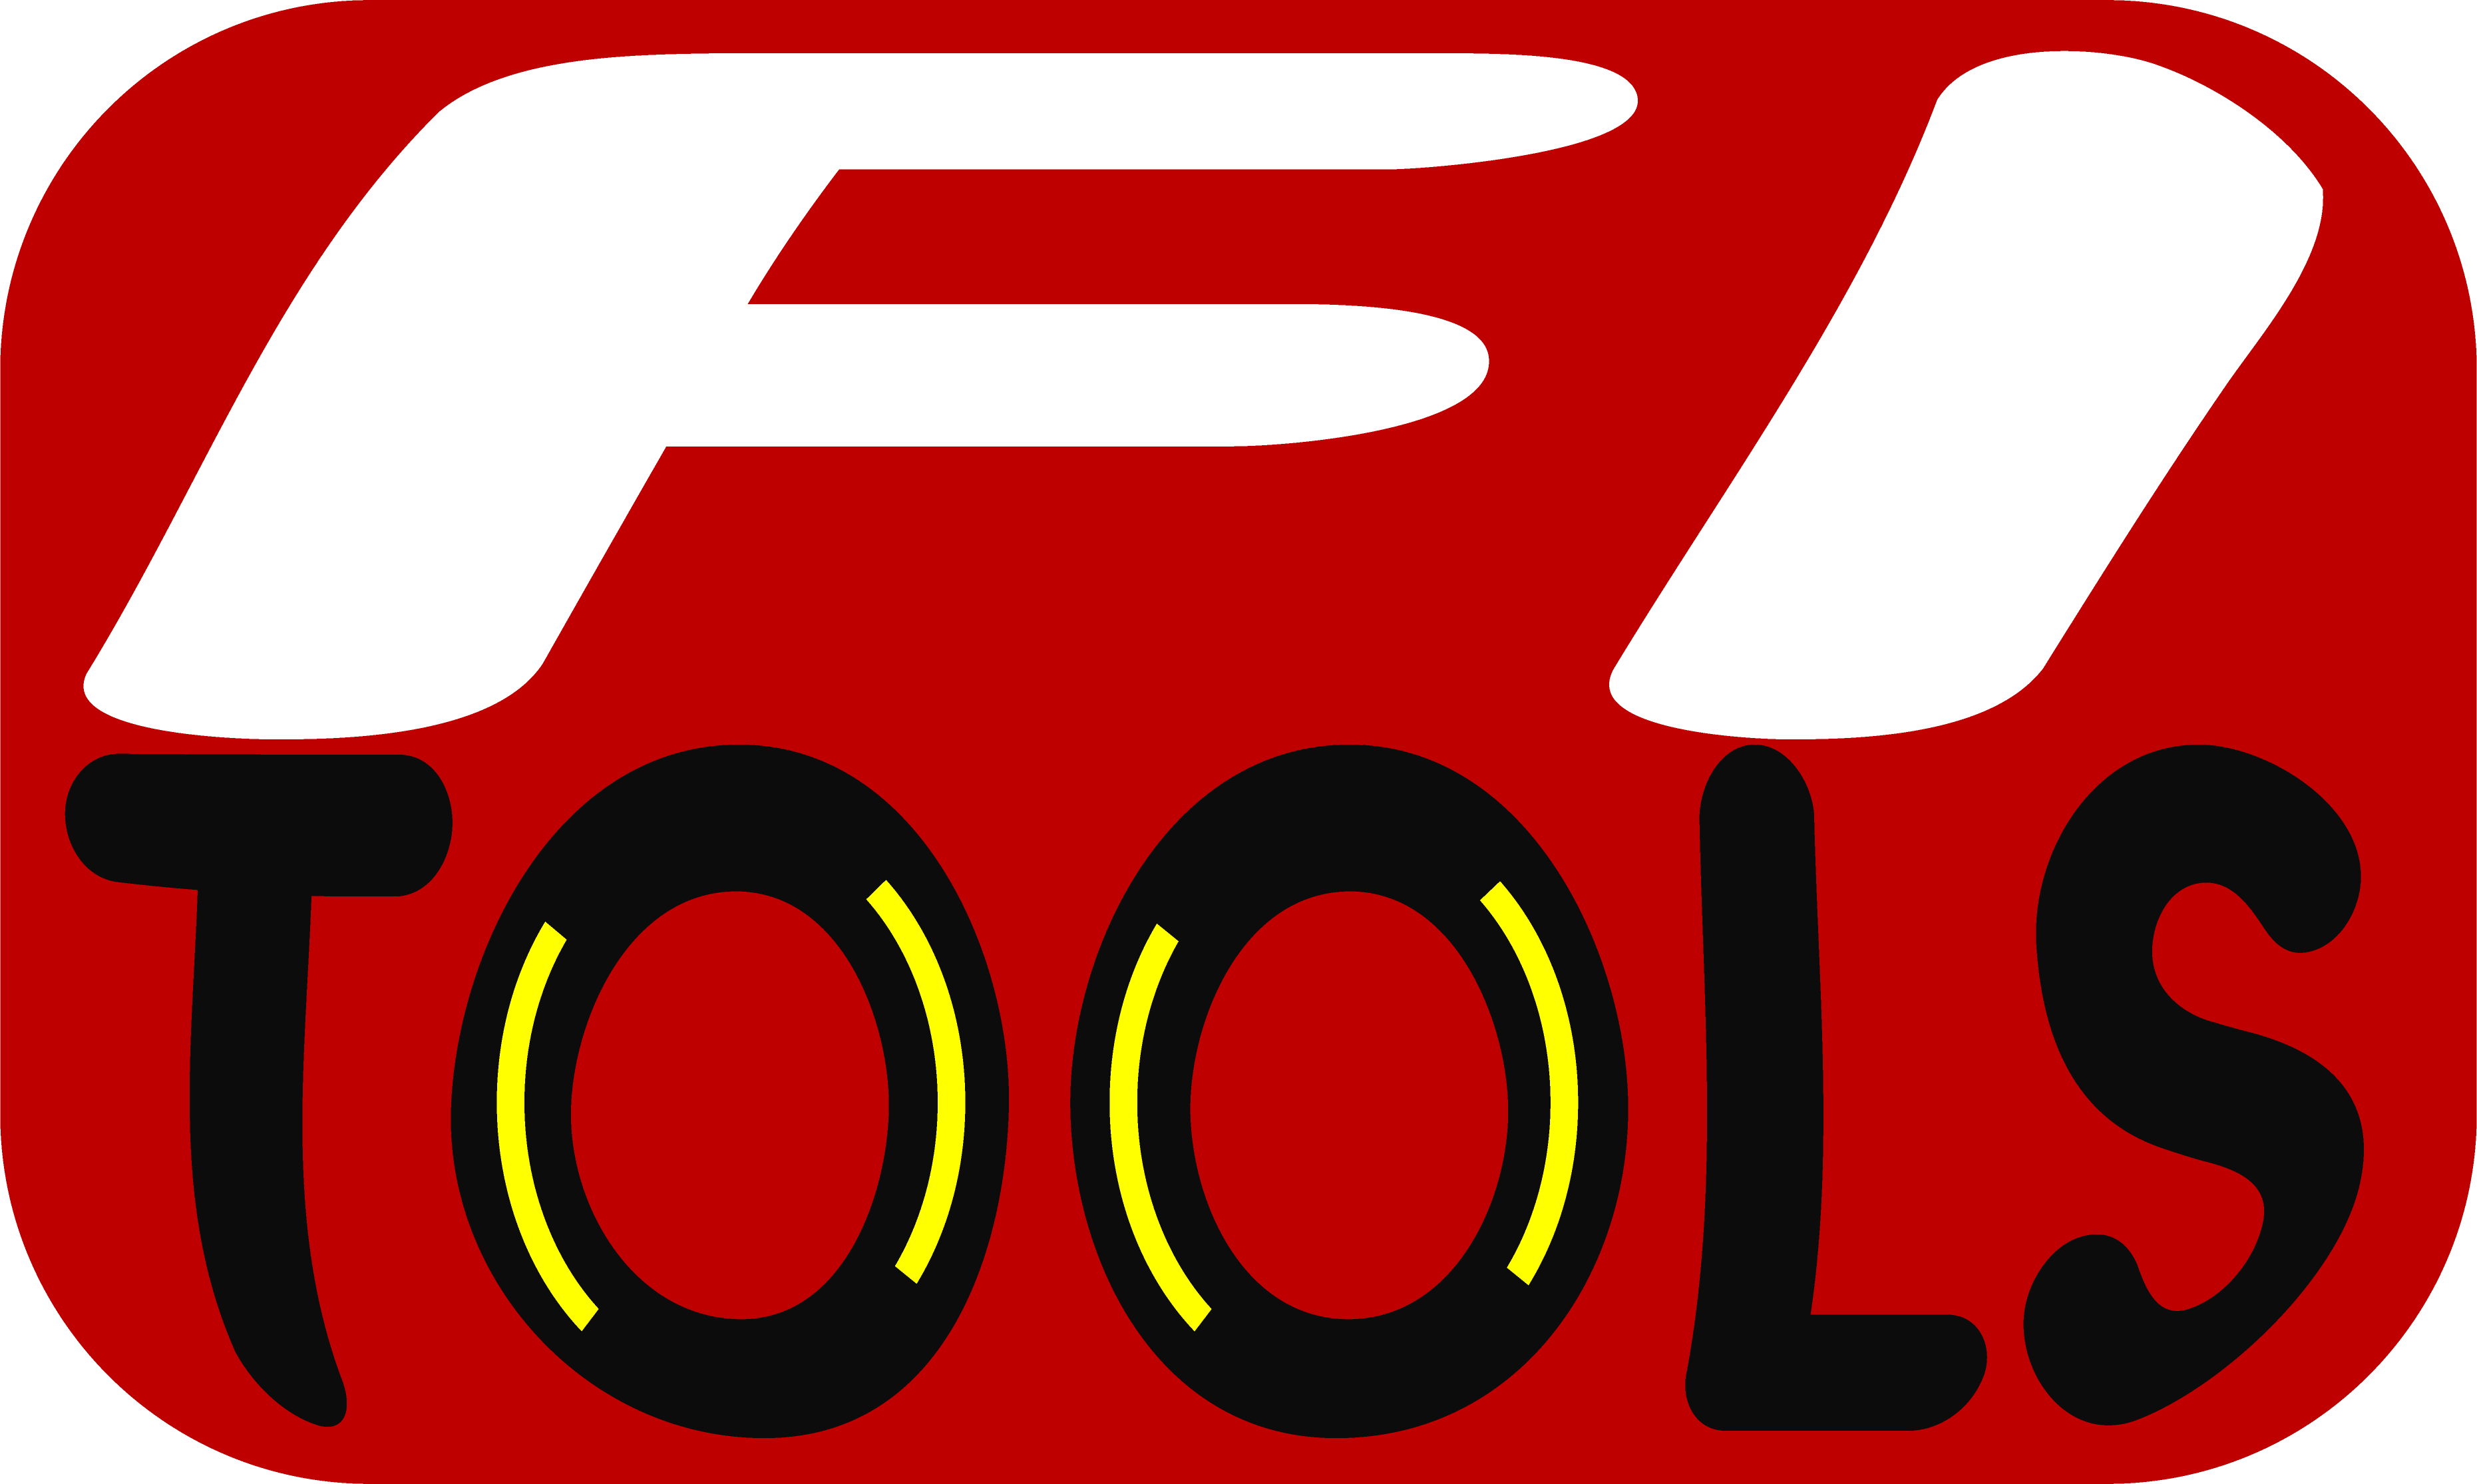 F1 tools